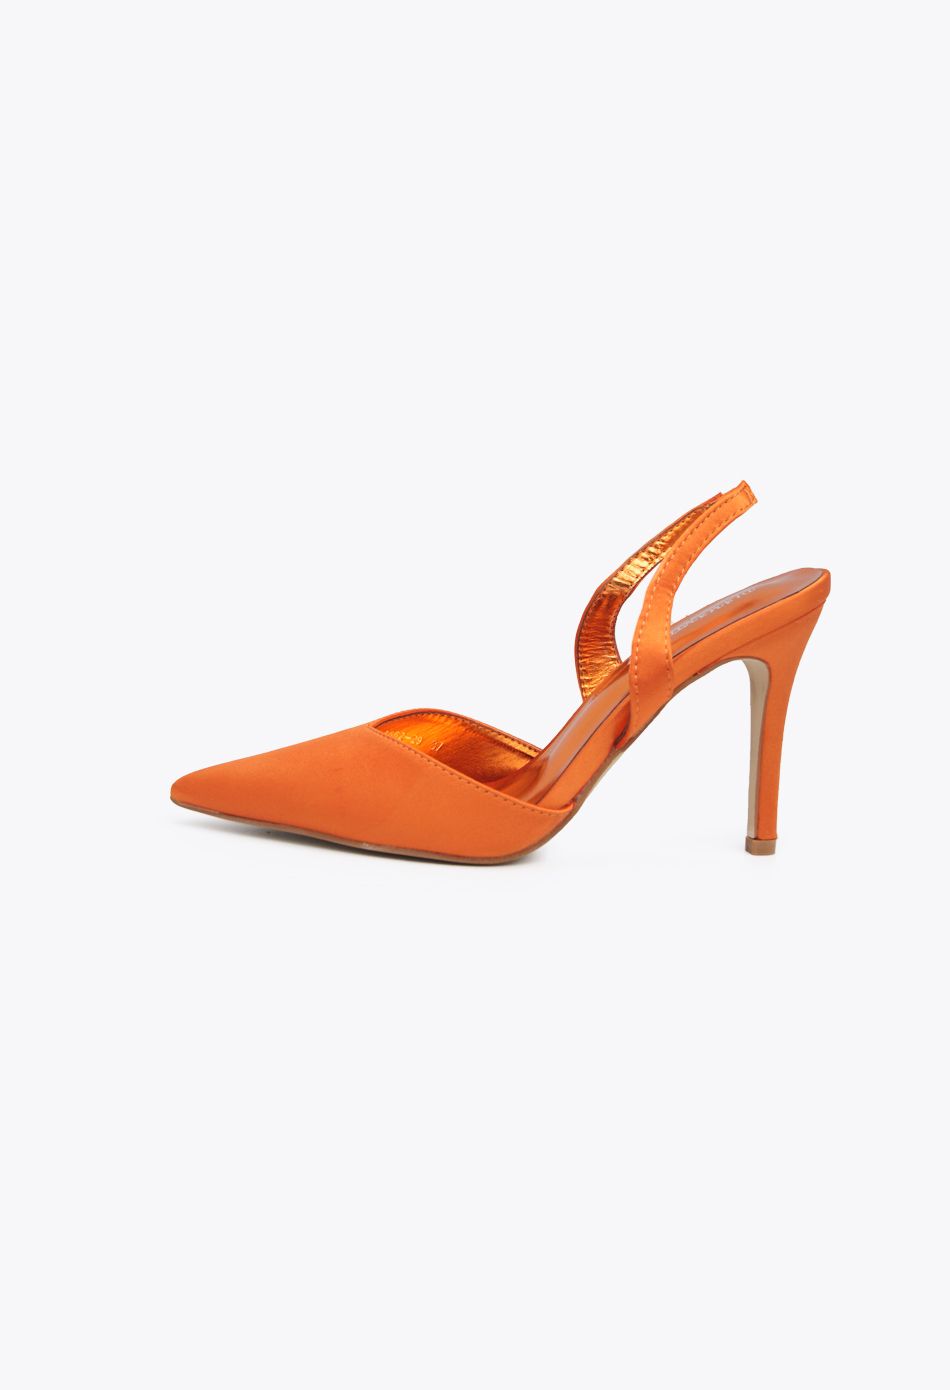 Γόβες Σατέν Open Heel με Λάστιχο Πορτοκαλί / 3662-orange Ανοιχτά Παπούτσια joya.gr